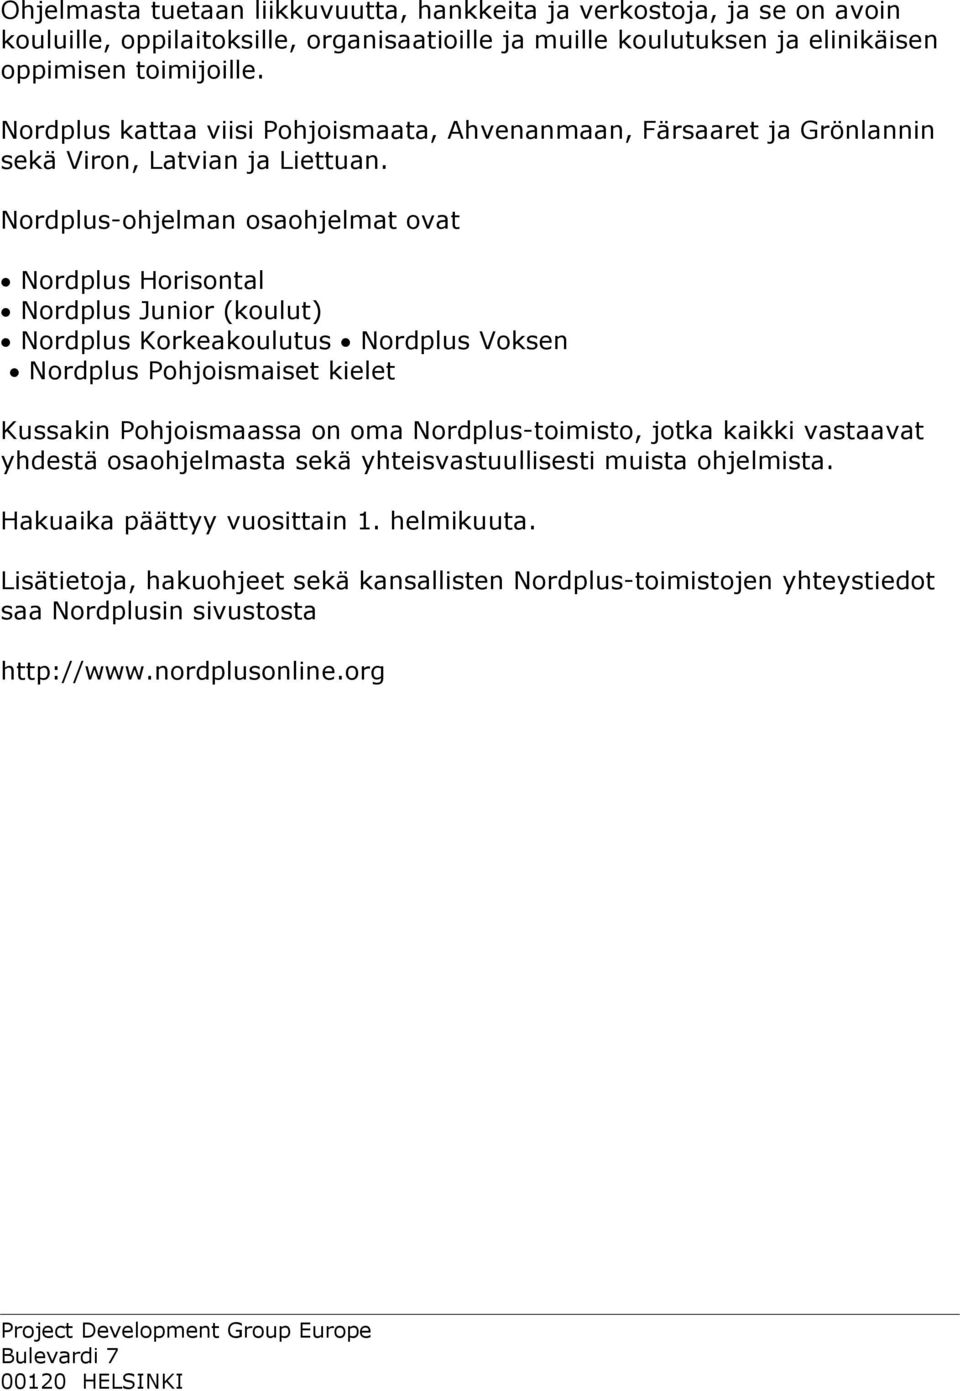 Nordplus-ohjelman osaohjelmat ovat Nordplus Horisontal Nordplus Junior (koulut) Nordplus Korkeakoulutus Nordplus Voksen Nordplus Pohjoismaiset kielet Kussakin Pohjoismaassa on oma